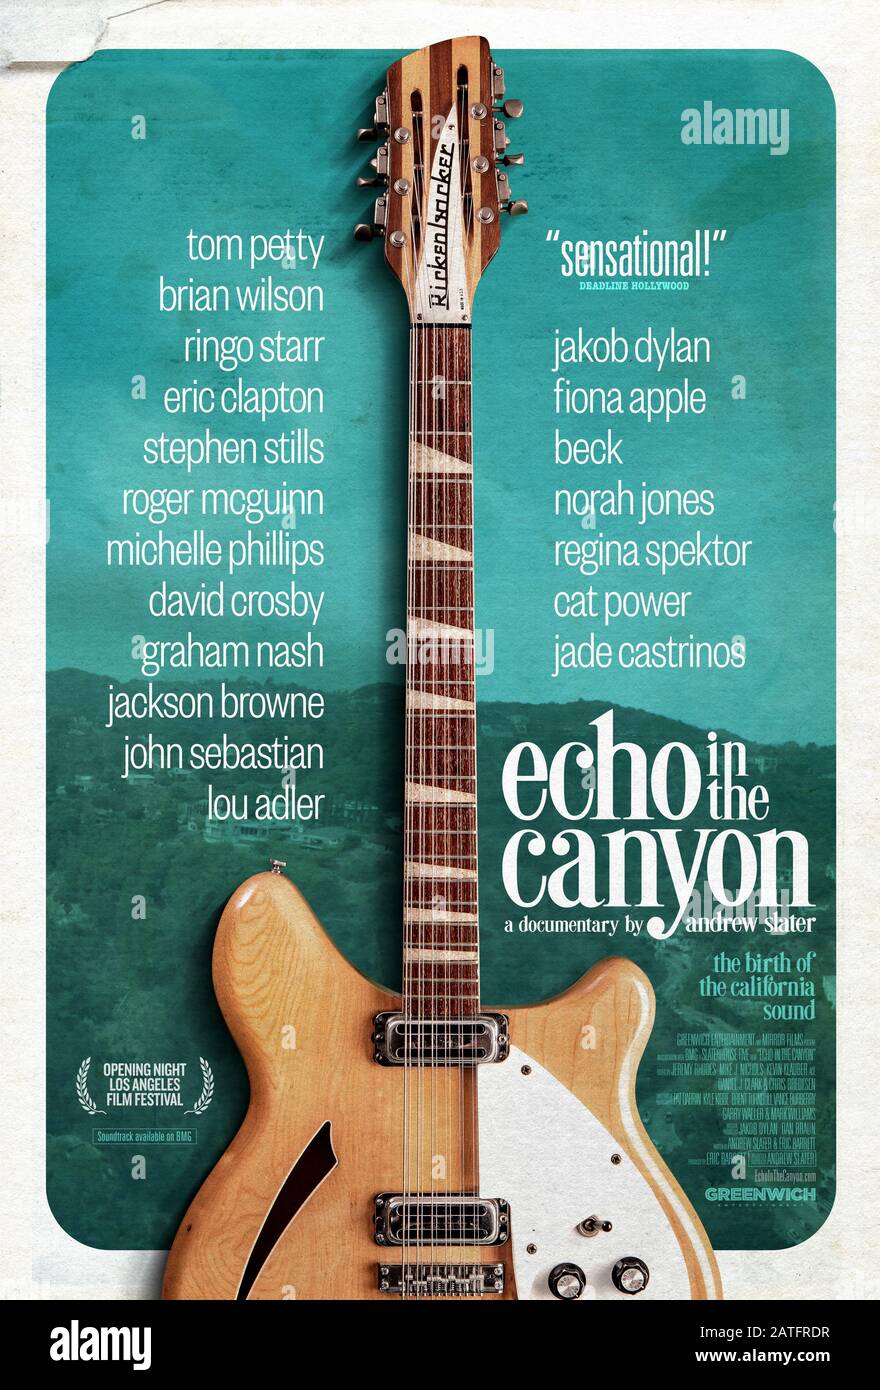 Echo in the Canyon (2018) unter der Regie von Andrew Slater und mit Lou Adler, Fiona Apple, The Beach Boys und The Byrds in den Hauptrollen. Dokumentation über die Musik aus dem Laurel Canyon Viertel in Los Angeles, Kalifornien in den 1960er Jahren. Stockfoto